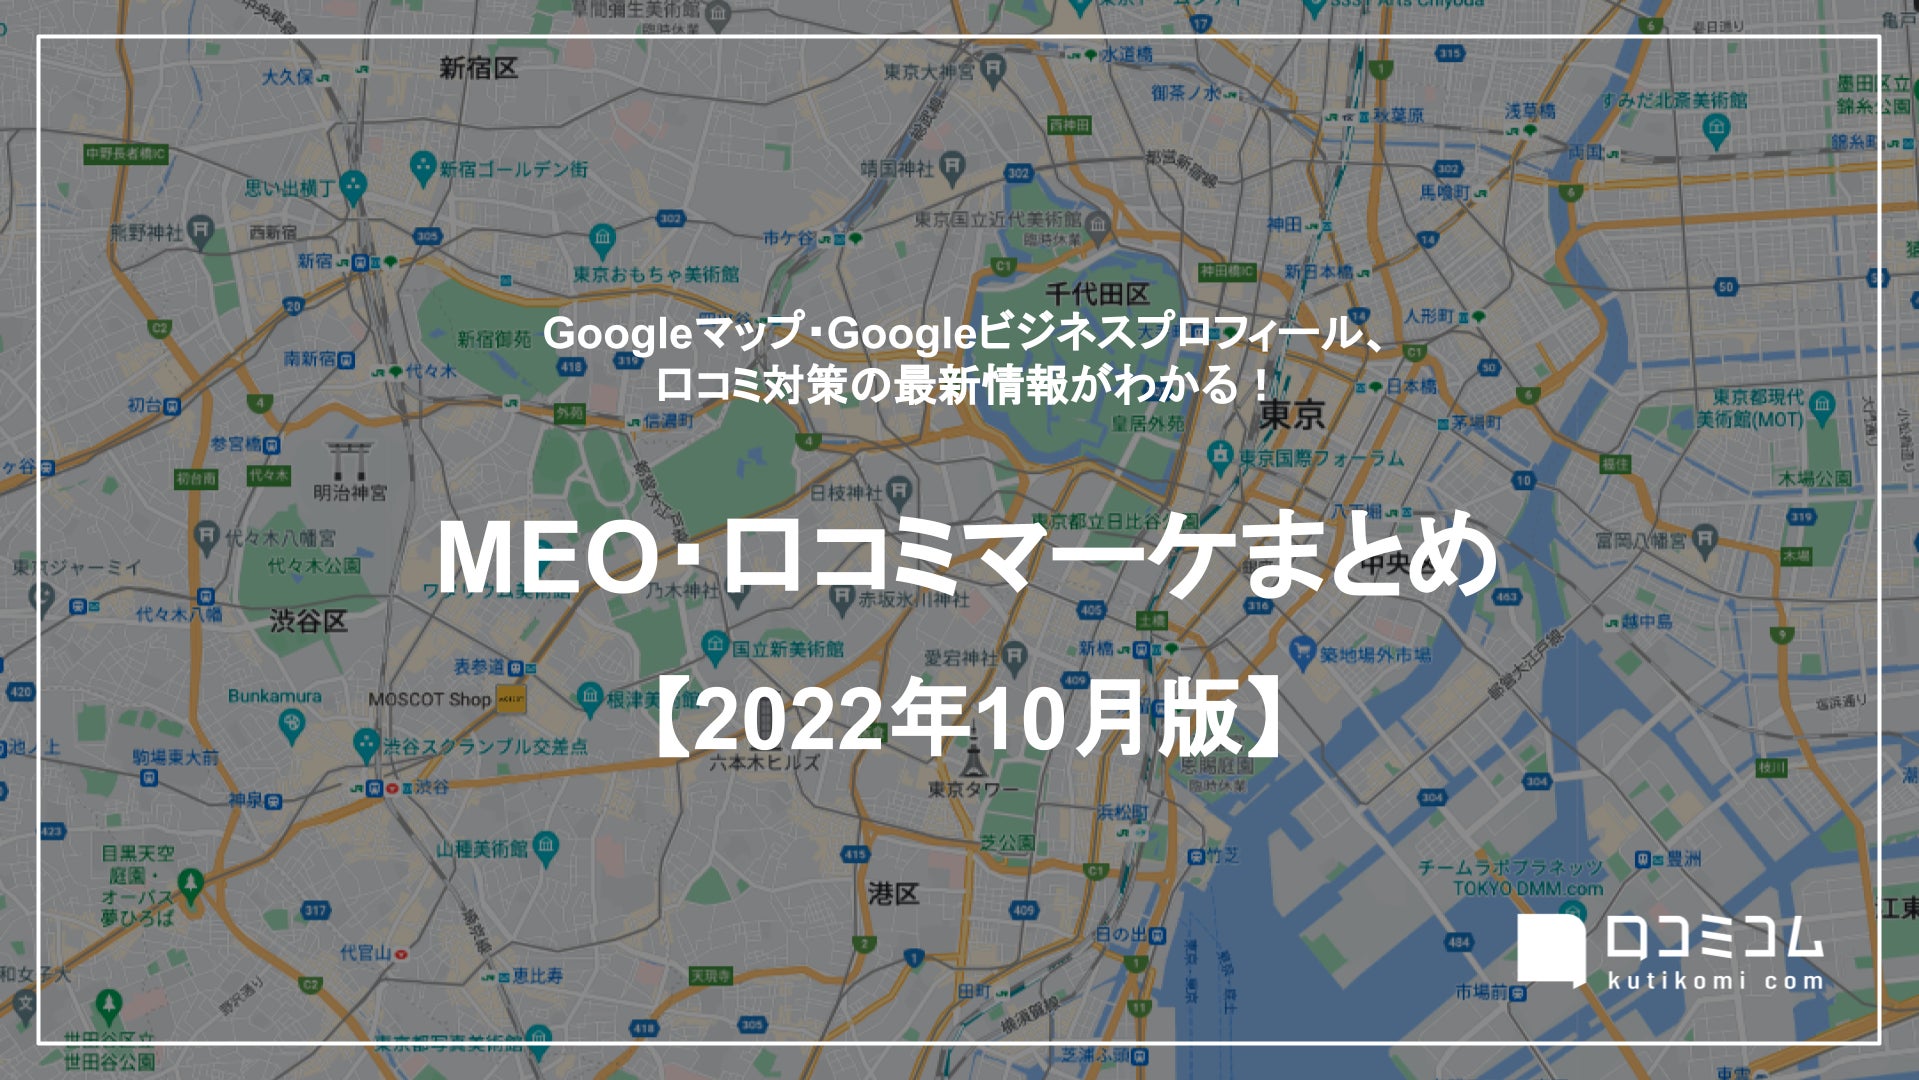 最新の「Googleマップ」更新情報レポート【2022年10月版】を口コミコムが公開